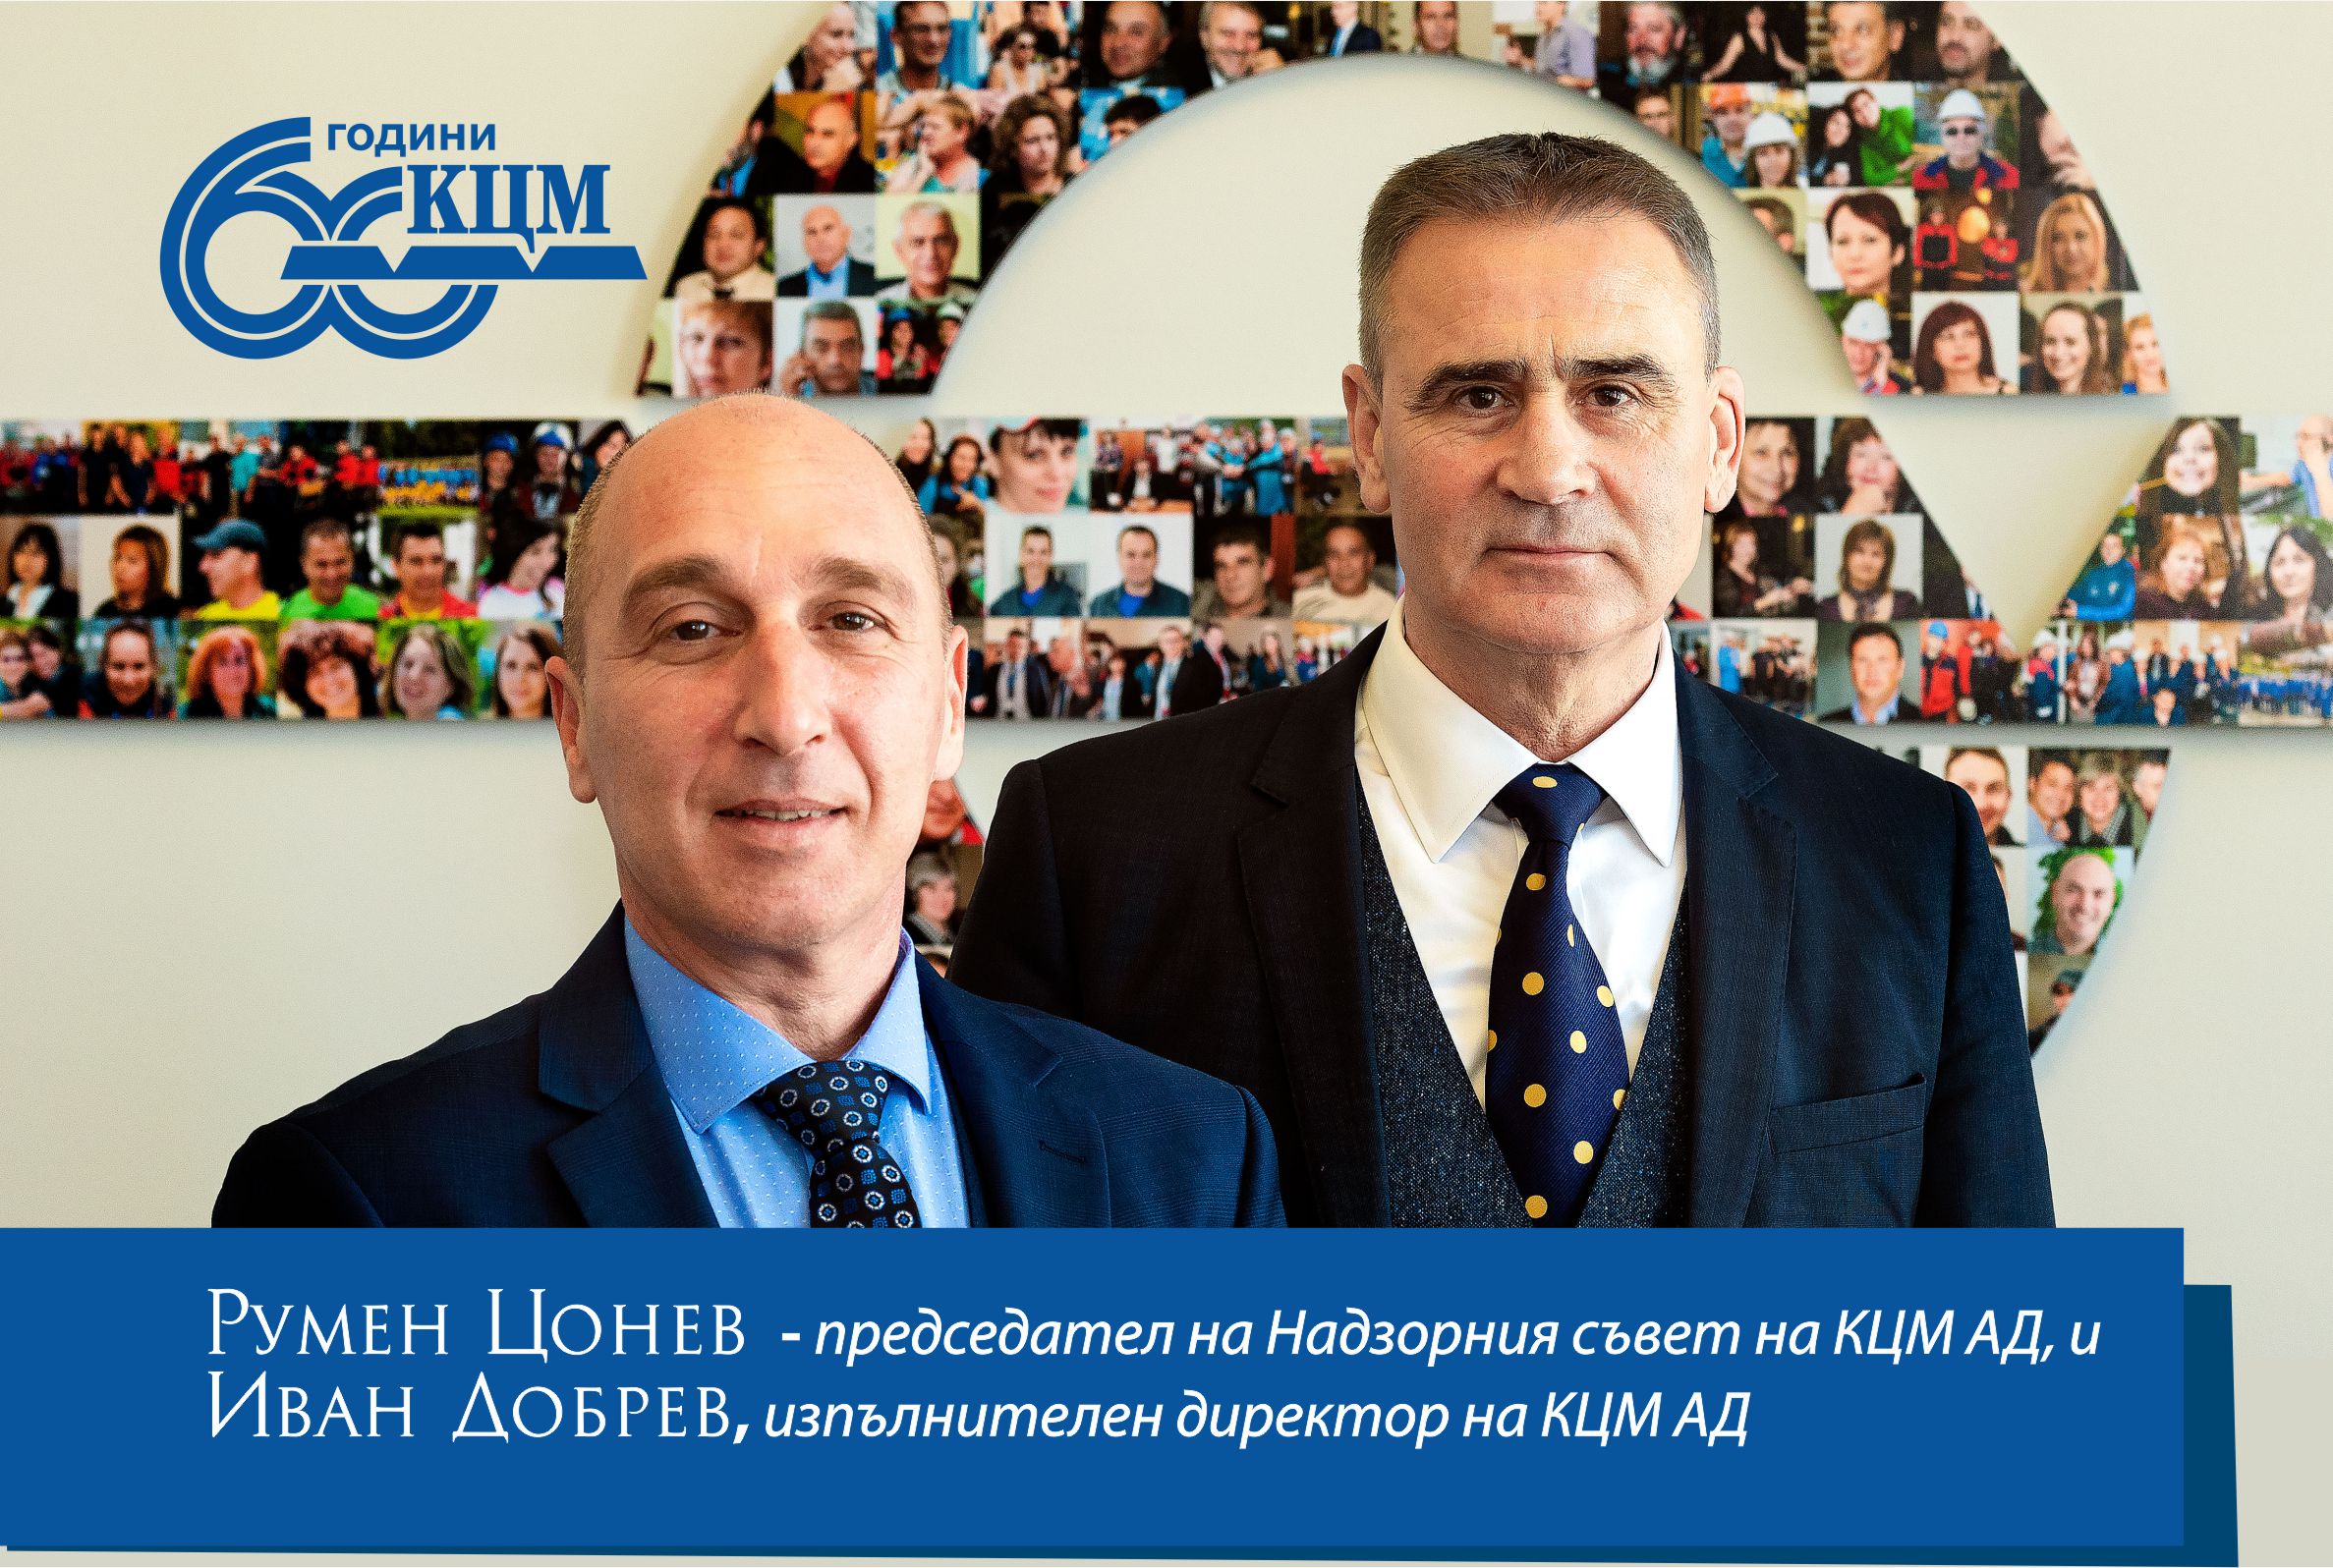 КЦМ - 60 години в полза на българската икономика и общество